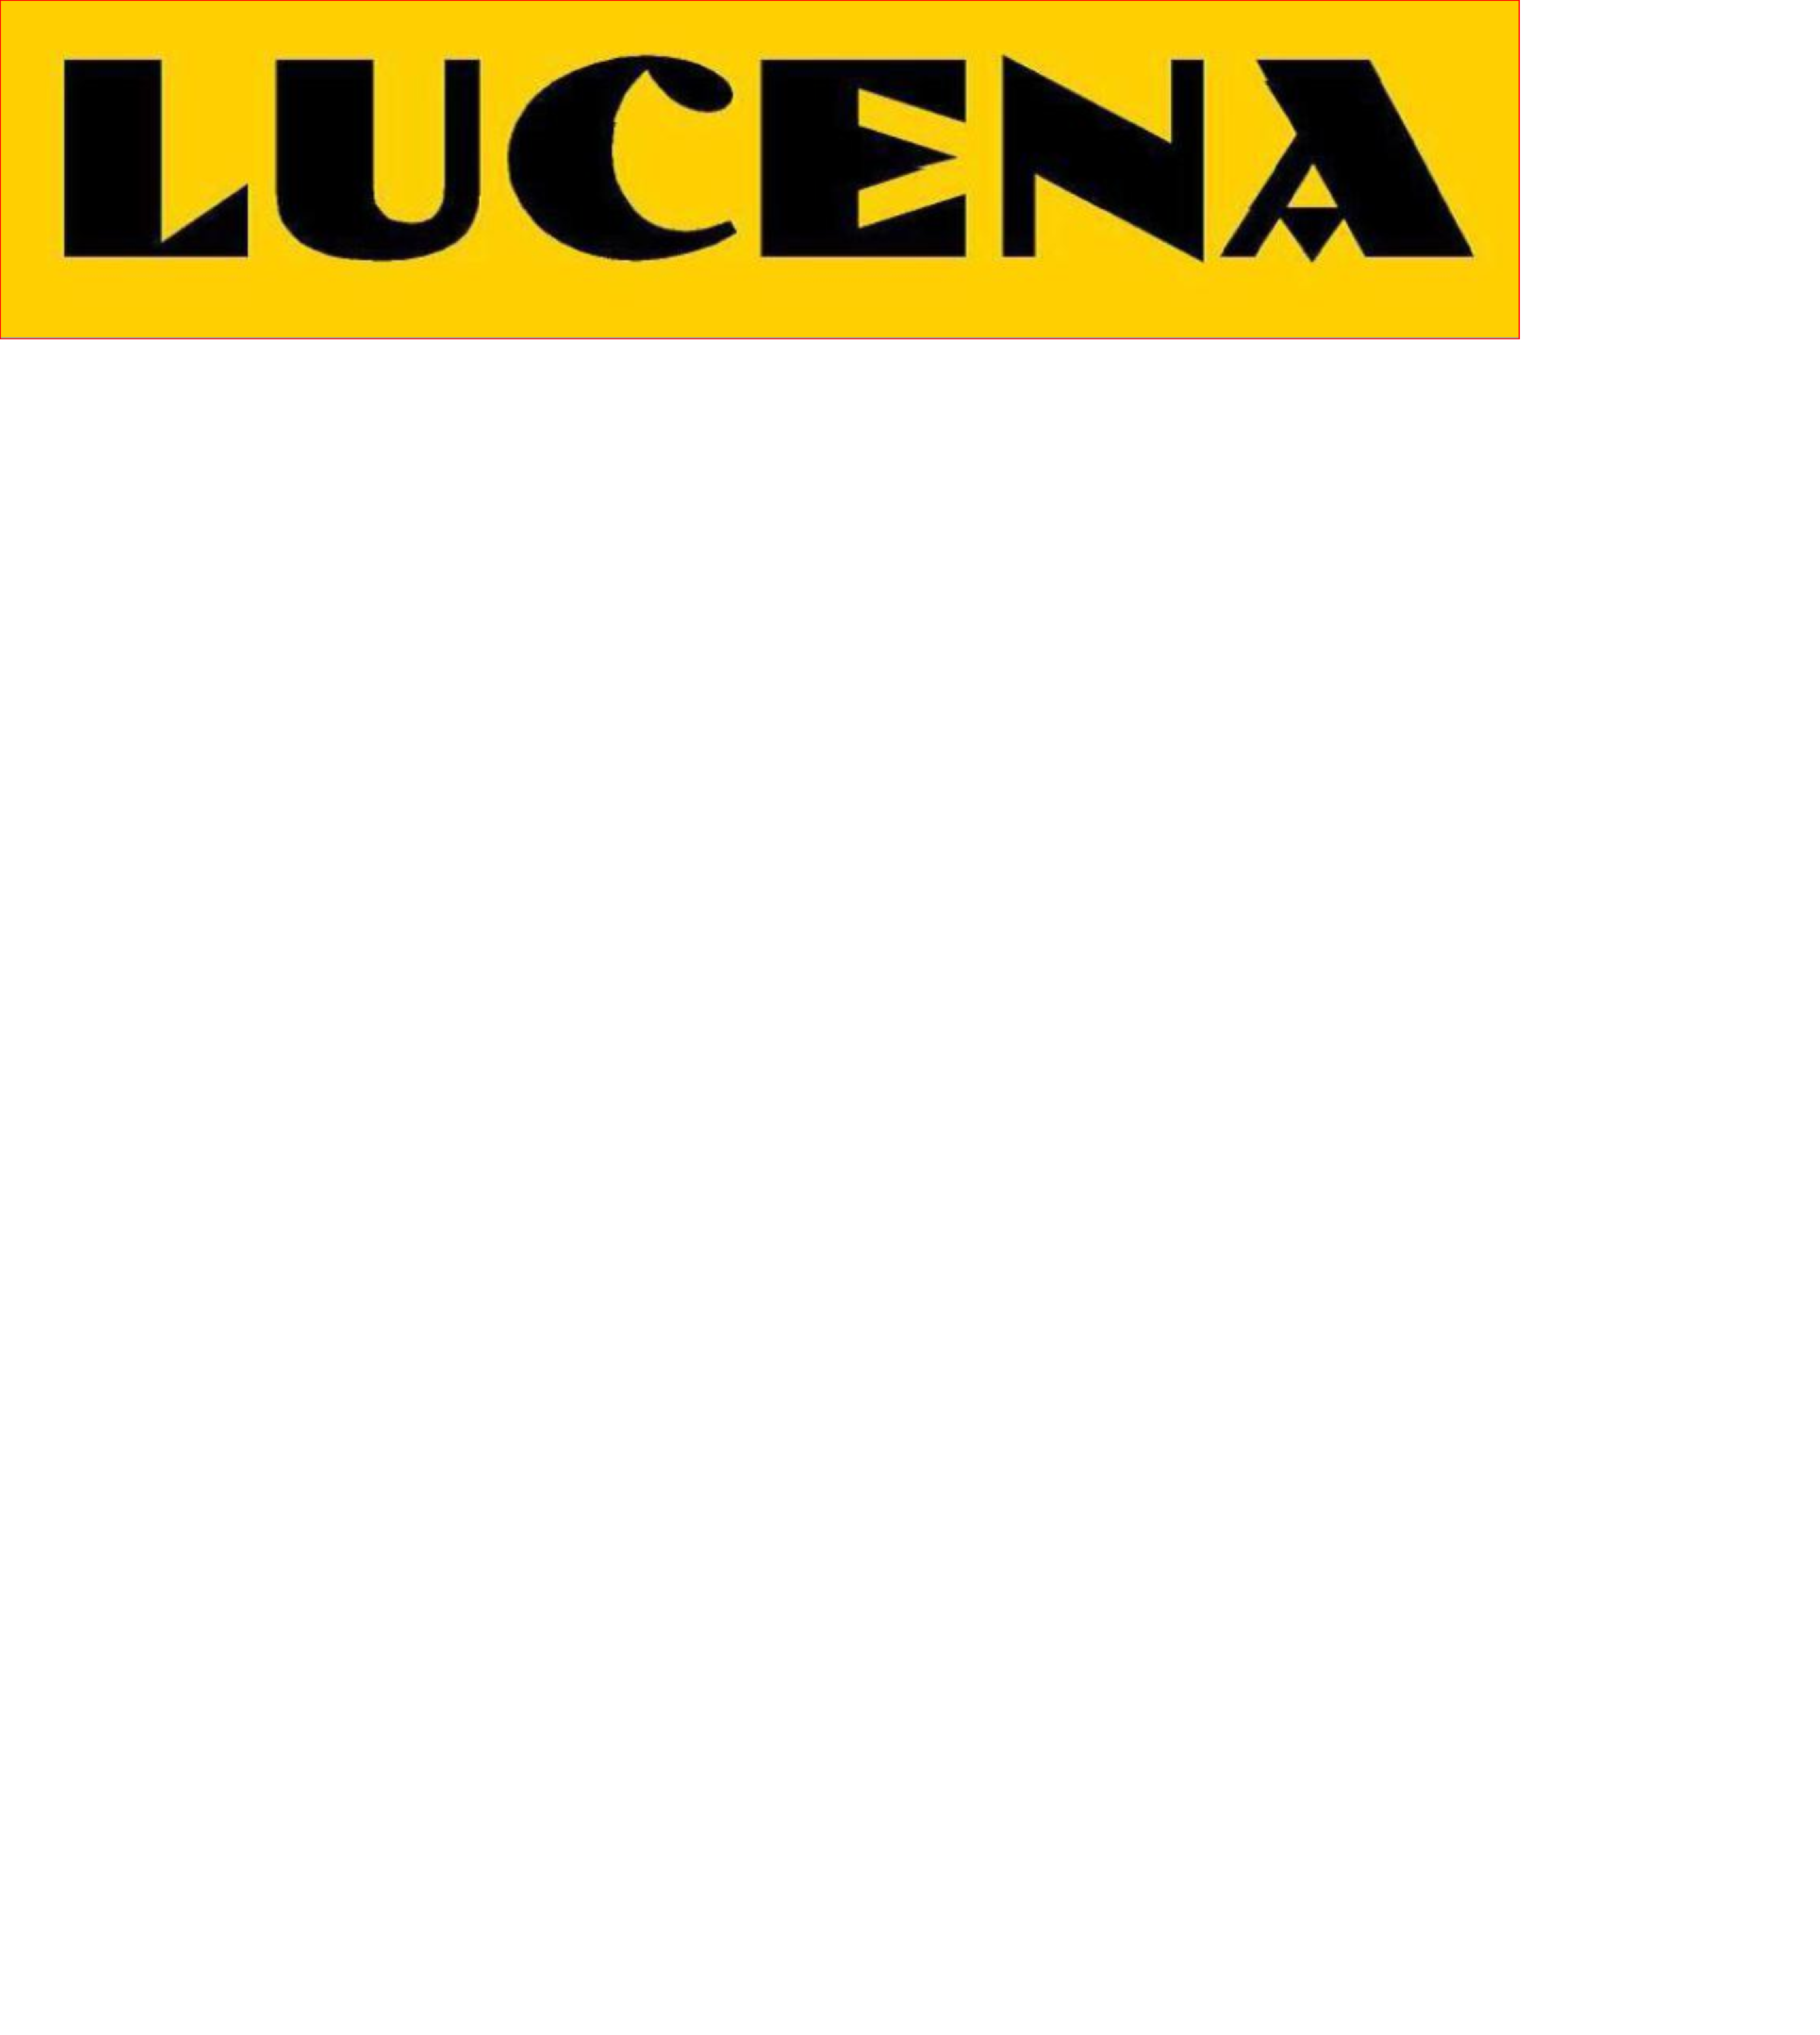 Grupo Lucena - Instalación de vallas y barreras